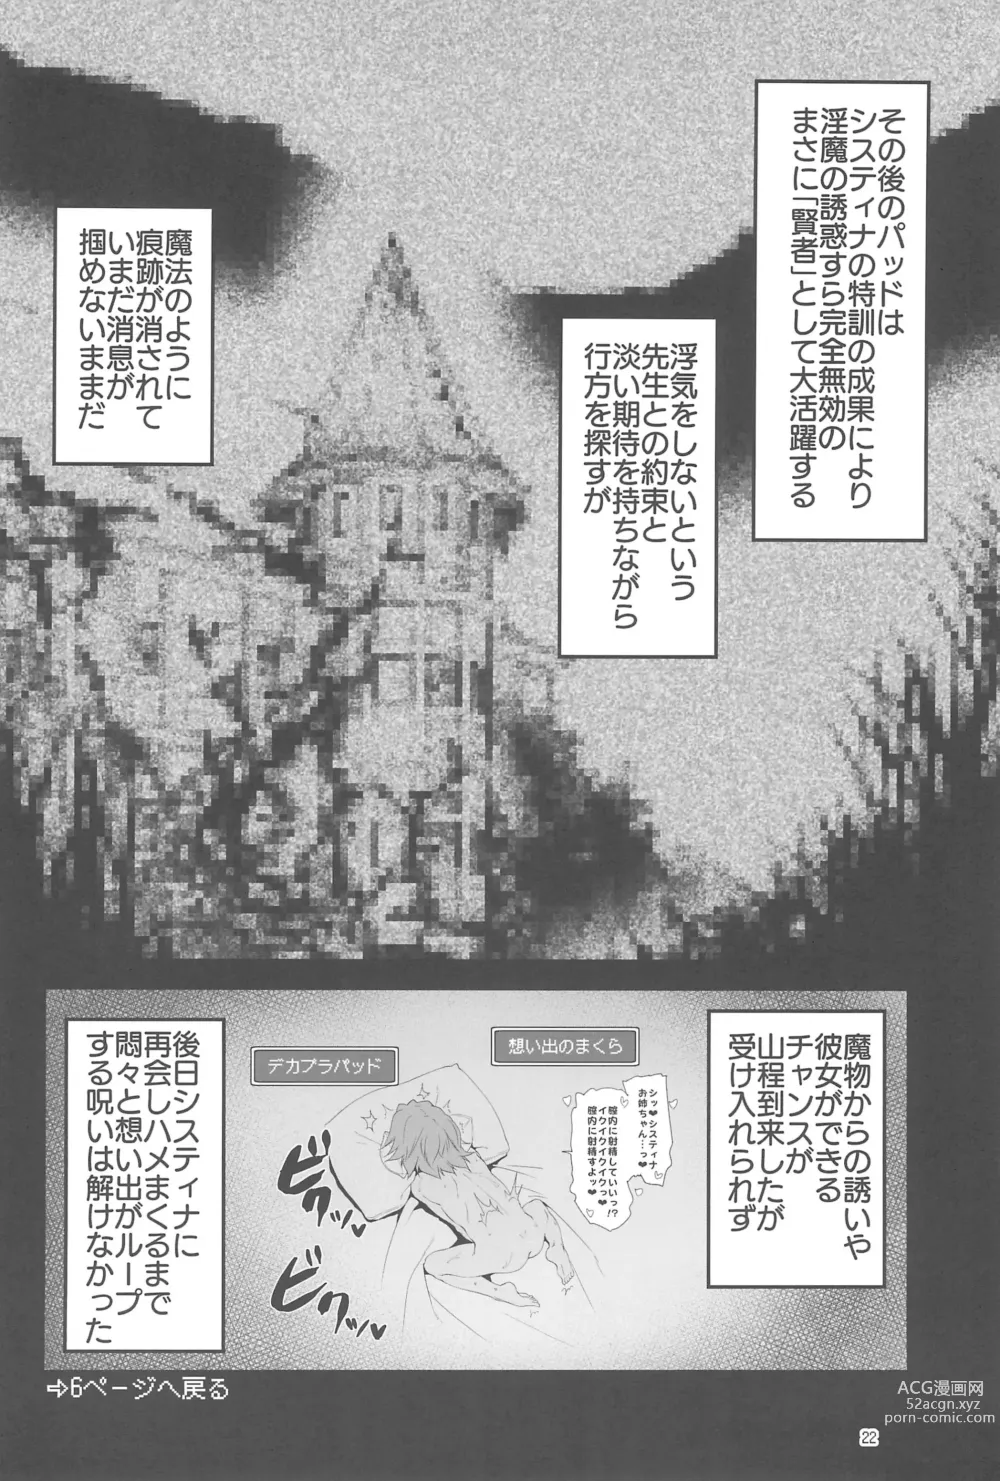 Page 22 of doujinshi Makotoni Zannen desu ga Bouken no Sho 9 wa Kiete Shimaimashita.